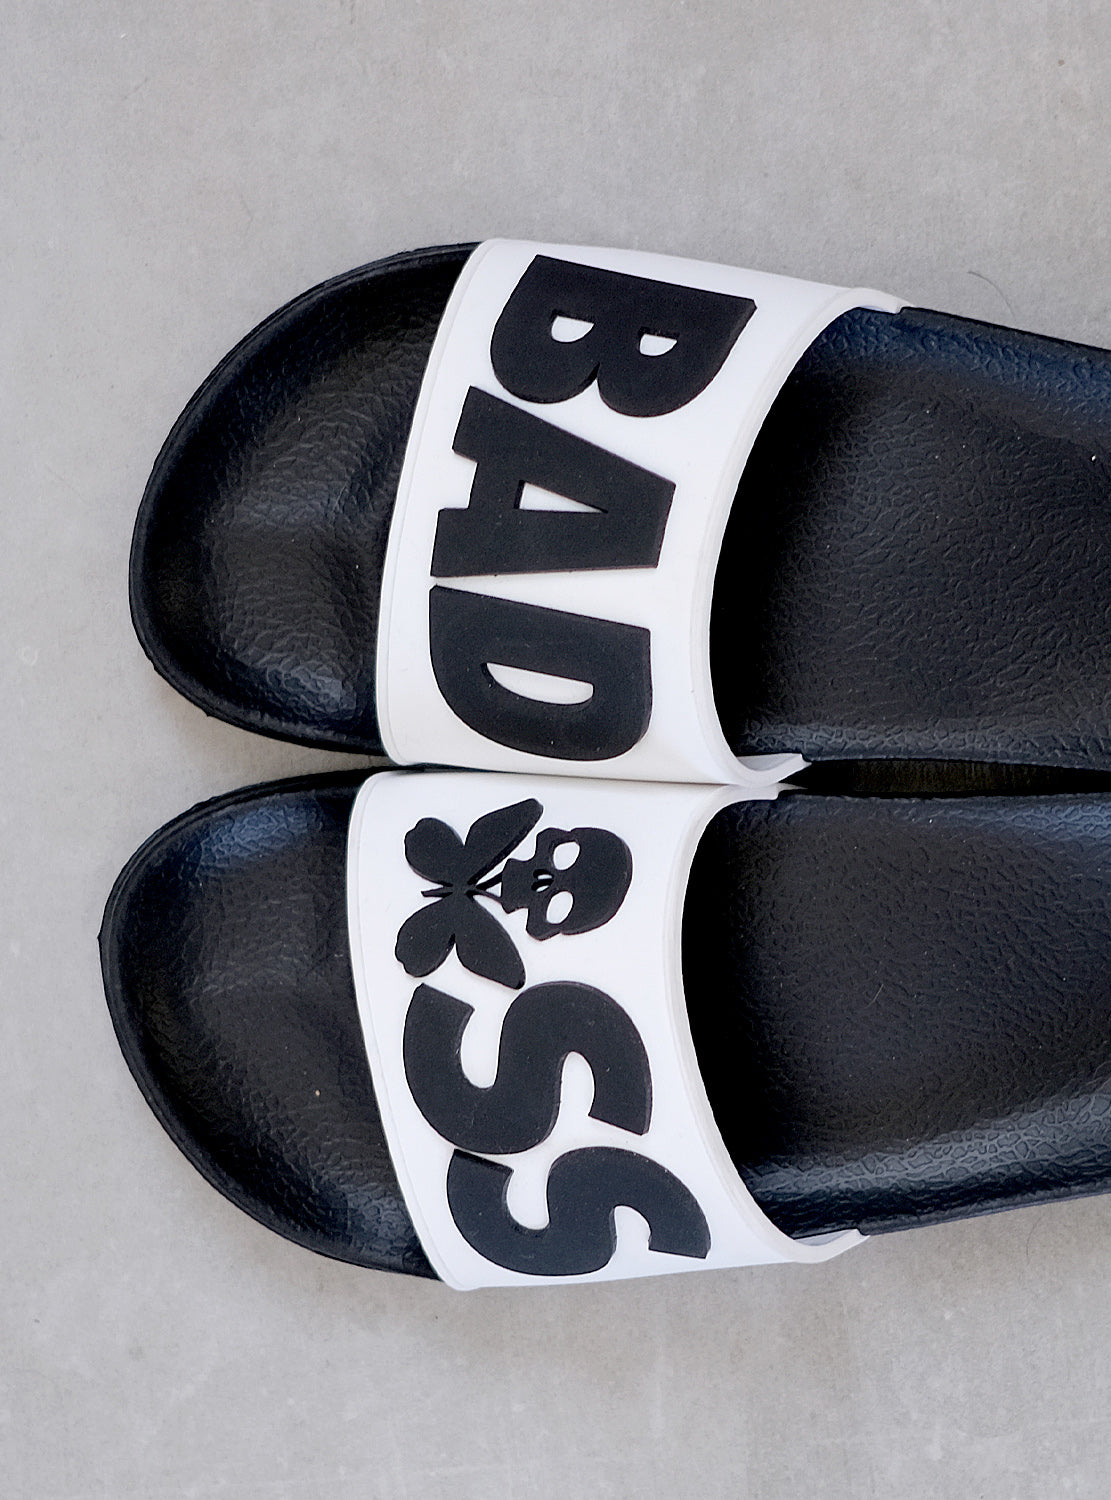 betty designs badass slides sandals